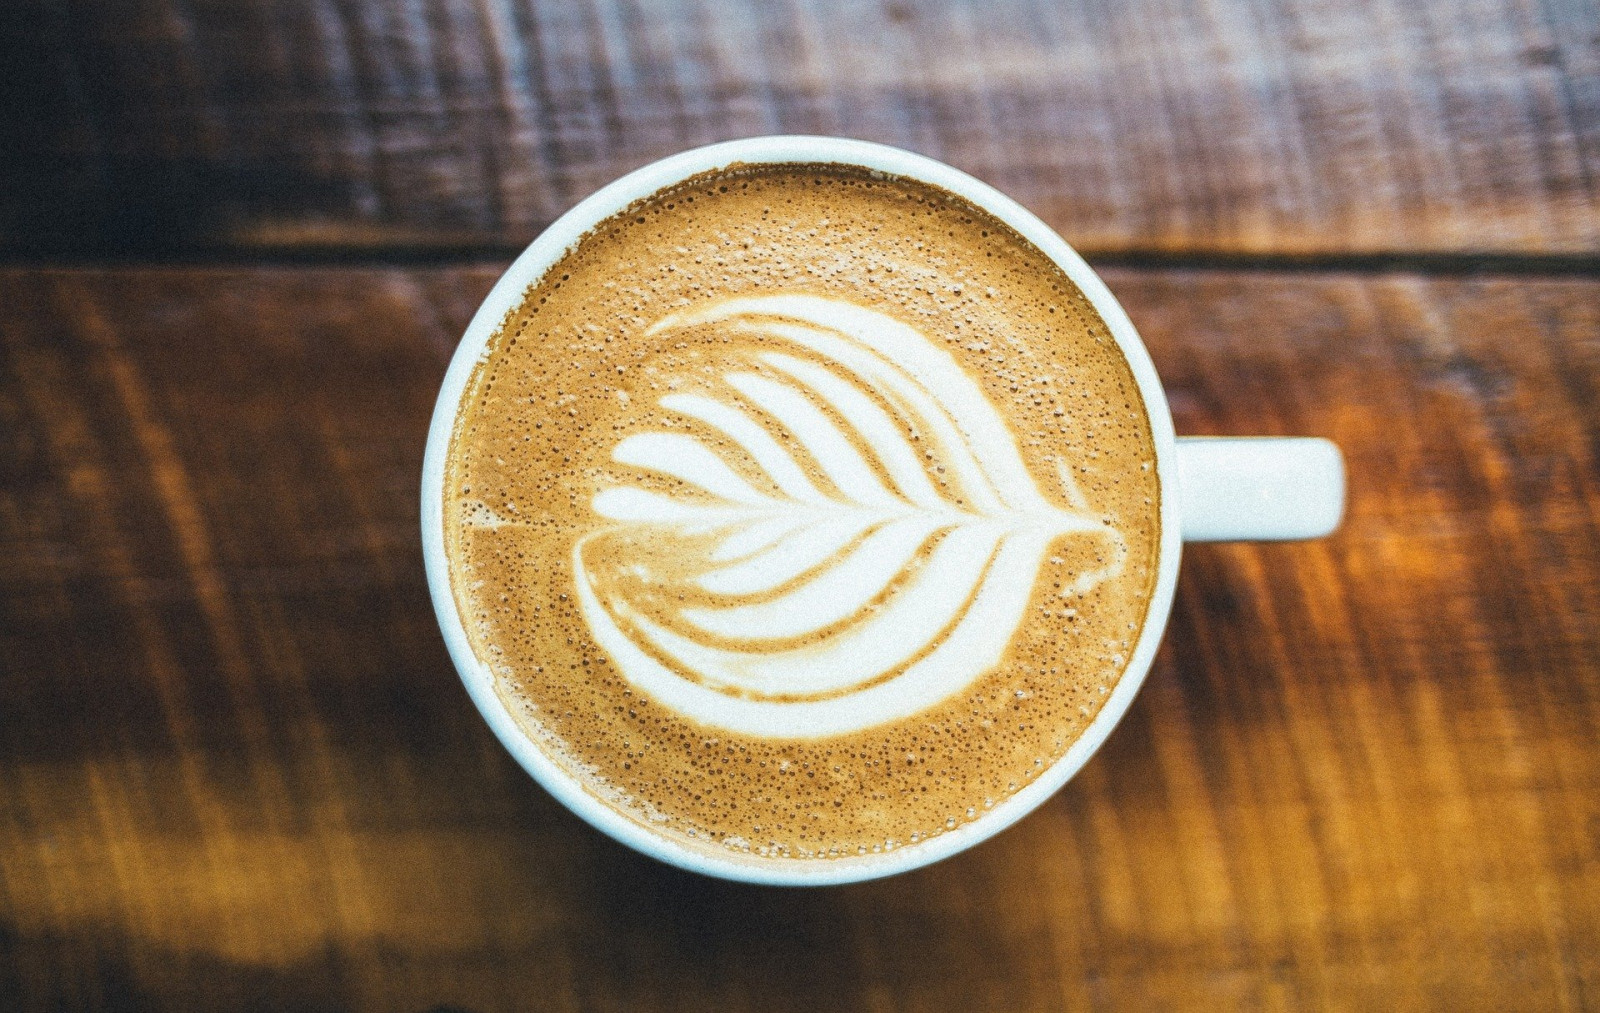 Nước thải từ quá trình sản xuất cà phê có thể tạo ra nguồn điện năng, giảm thiểu ô nhiễm môi trường. (Ảnh: Pixabay)